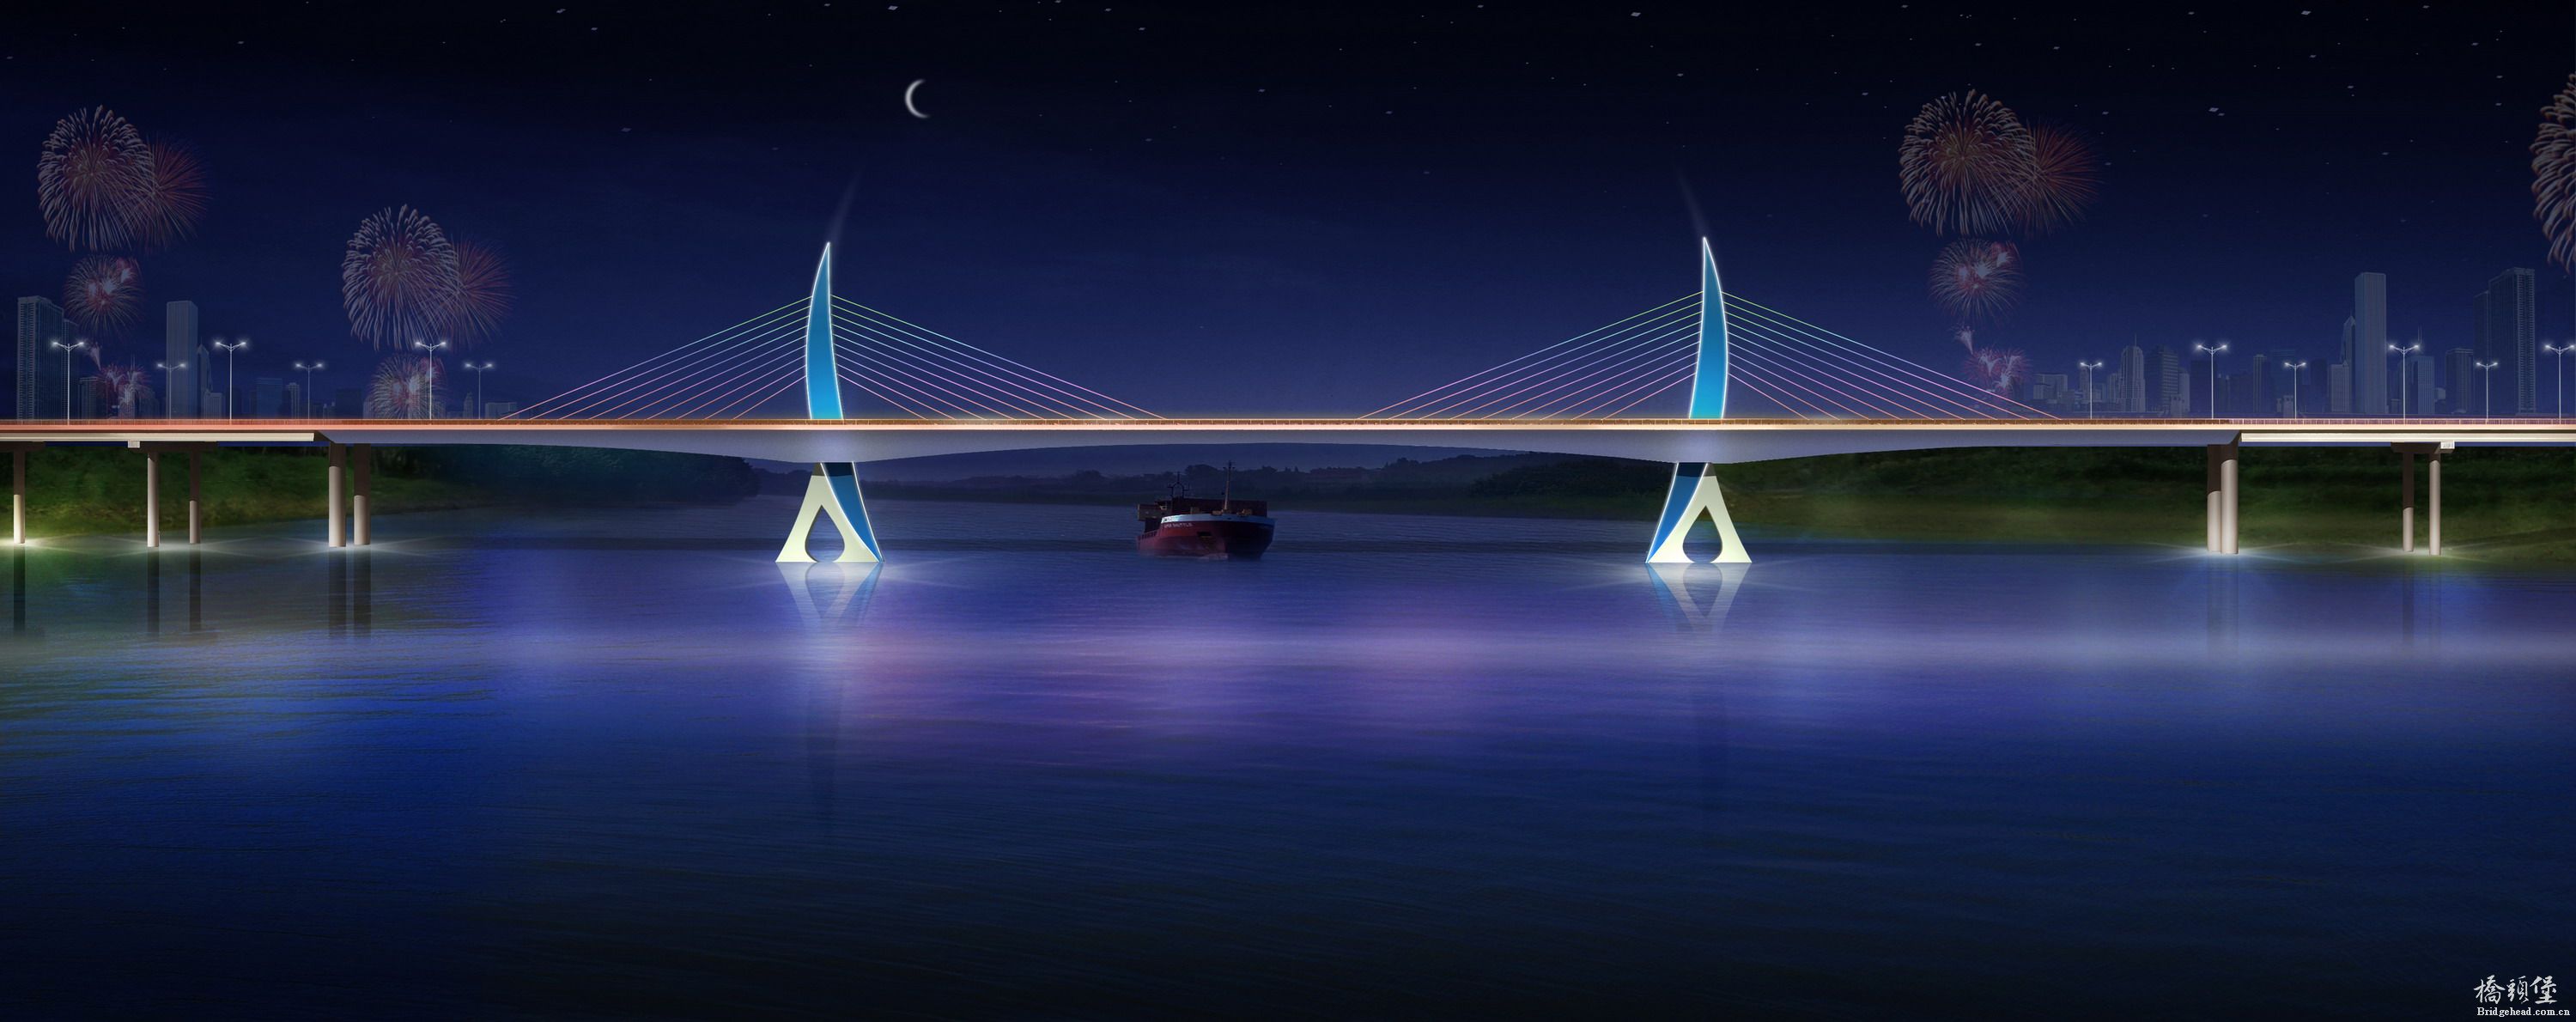 太和玄月大桥夜景.jpg